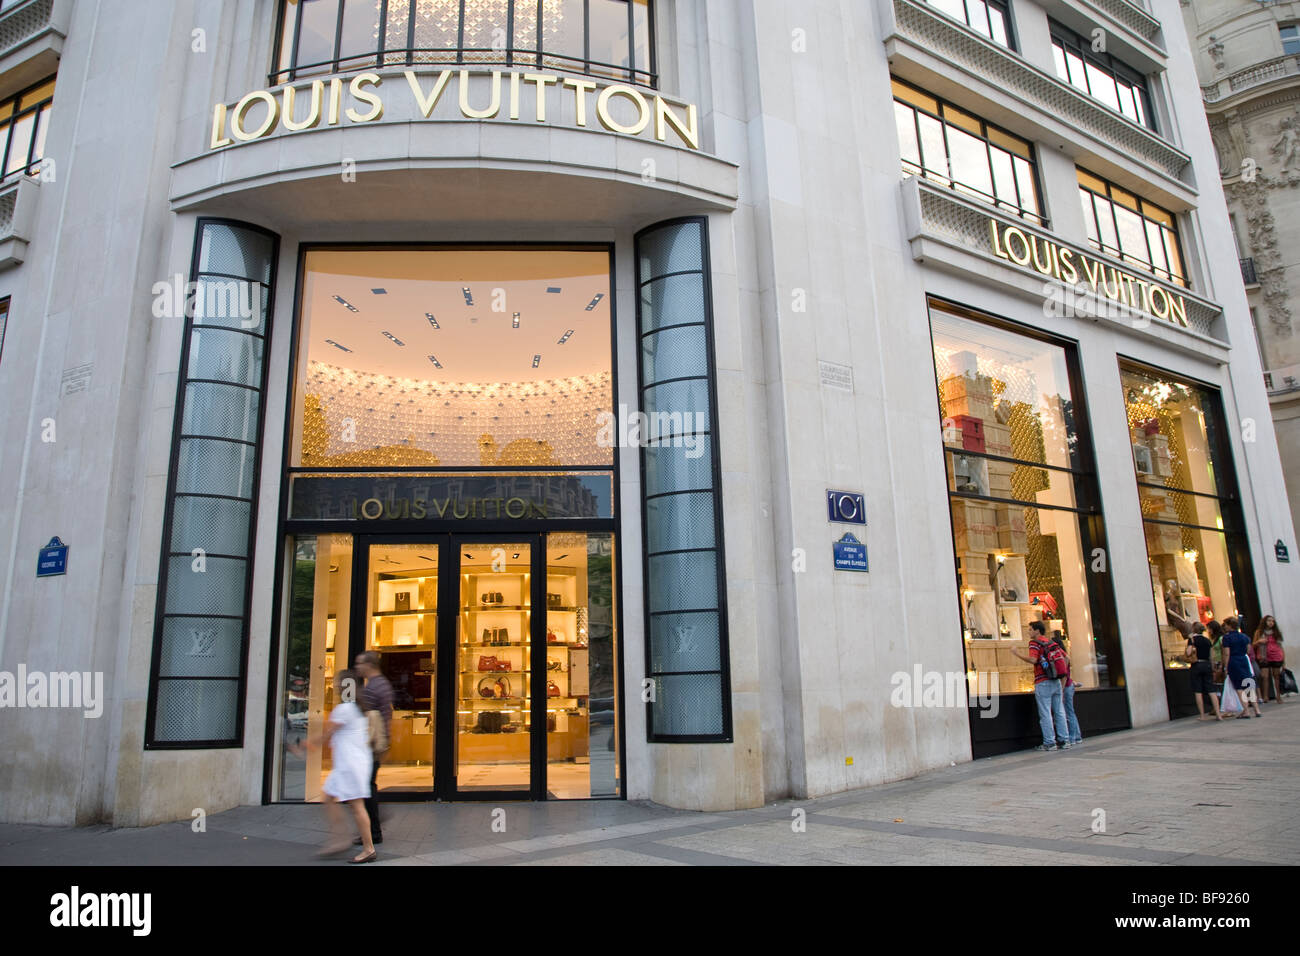 Louis Vuitton Shop, Champs Elysees, Paris, France Stock Photo: 26629512 - Alamy